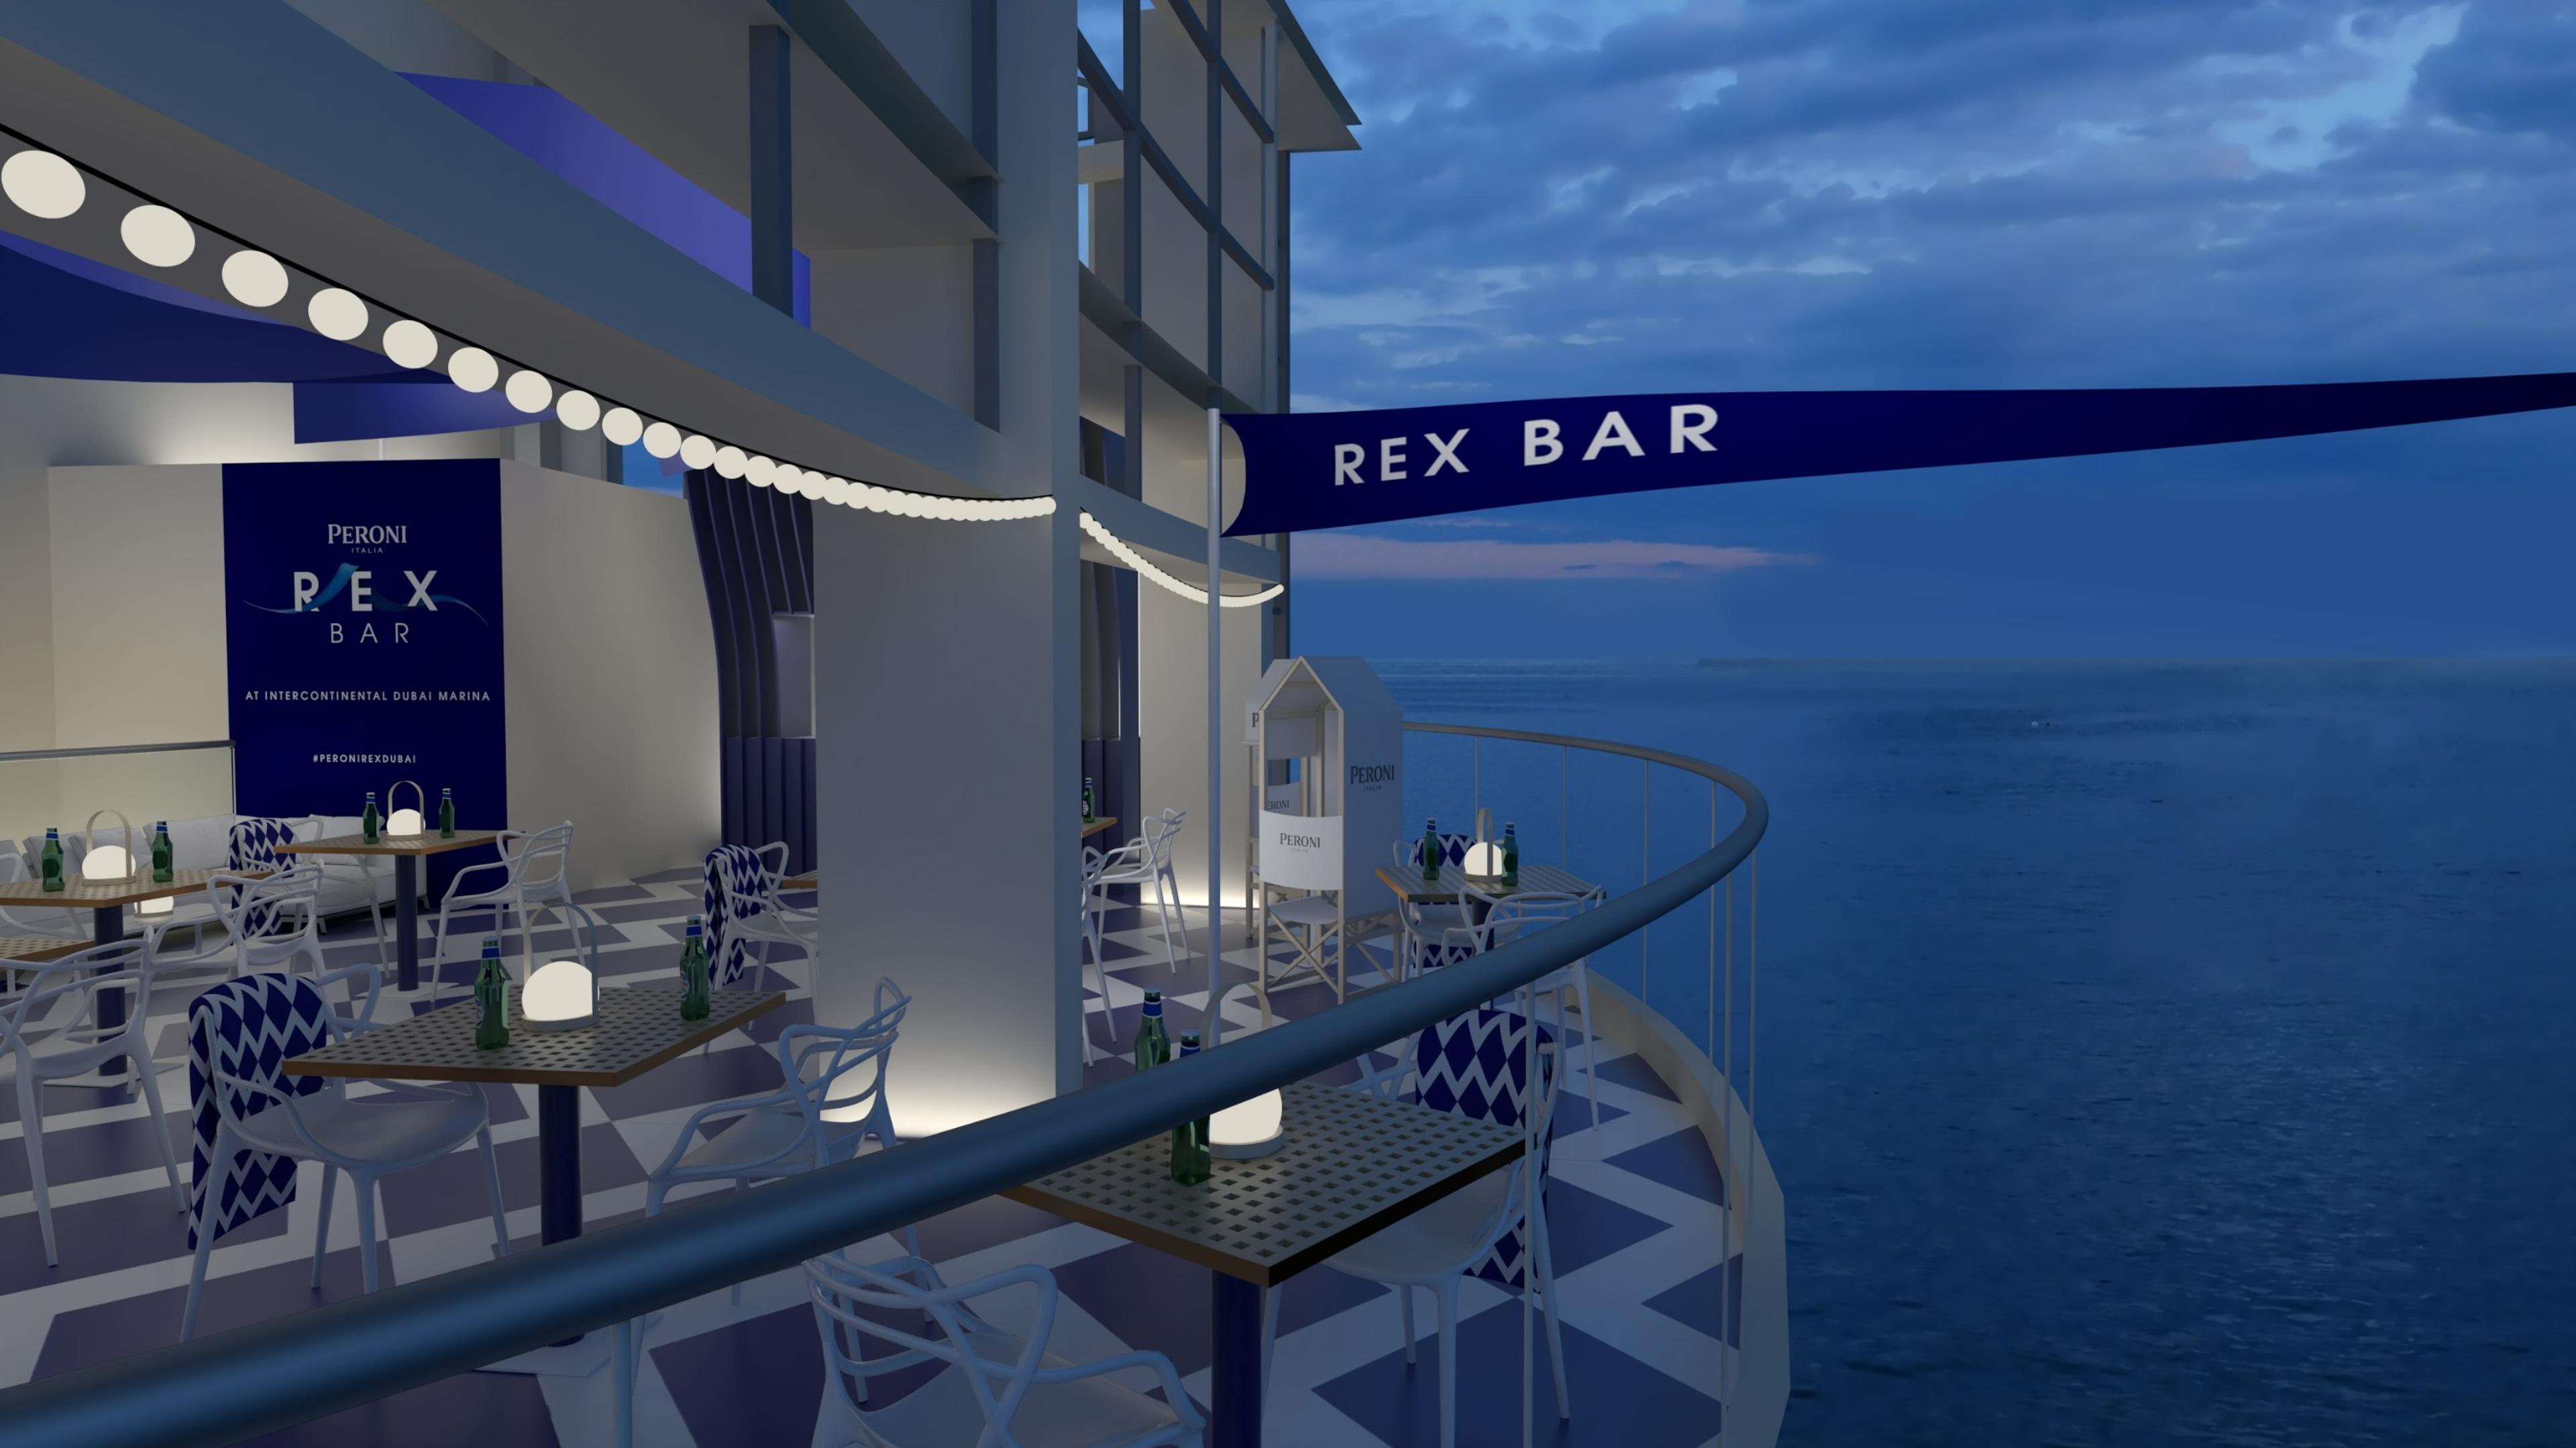 Rex Bar Dubai